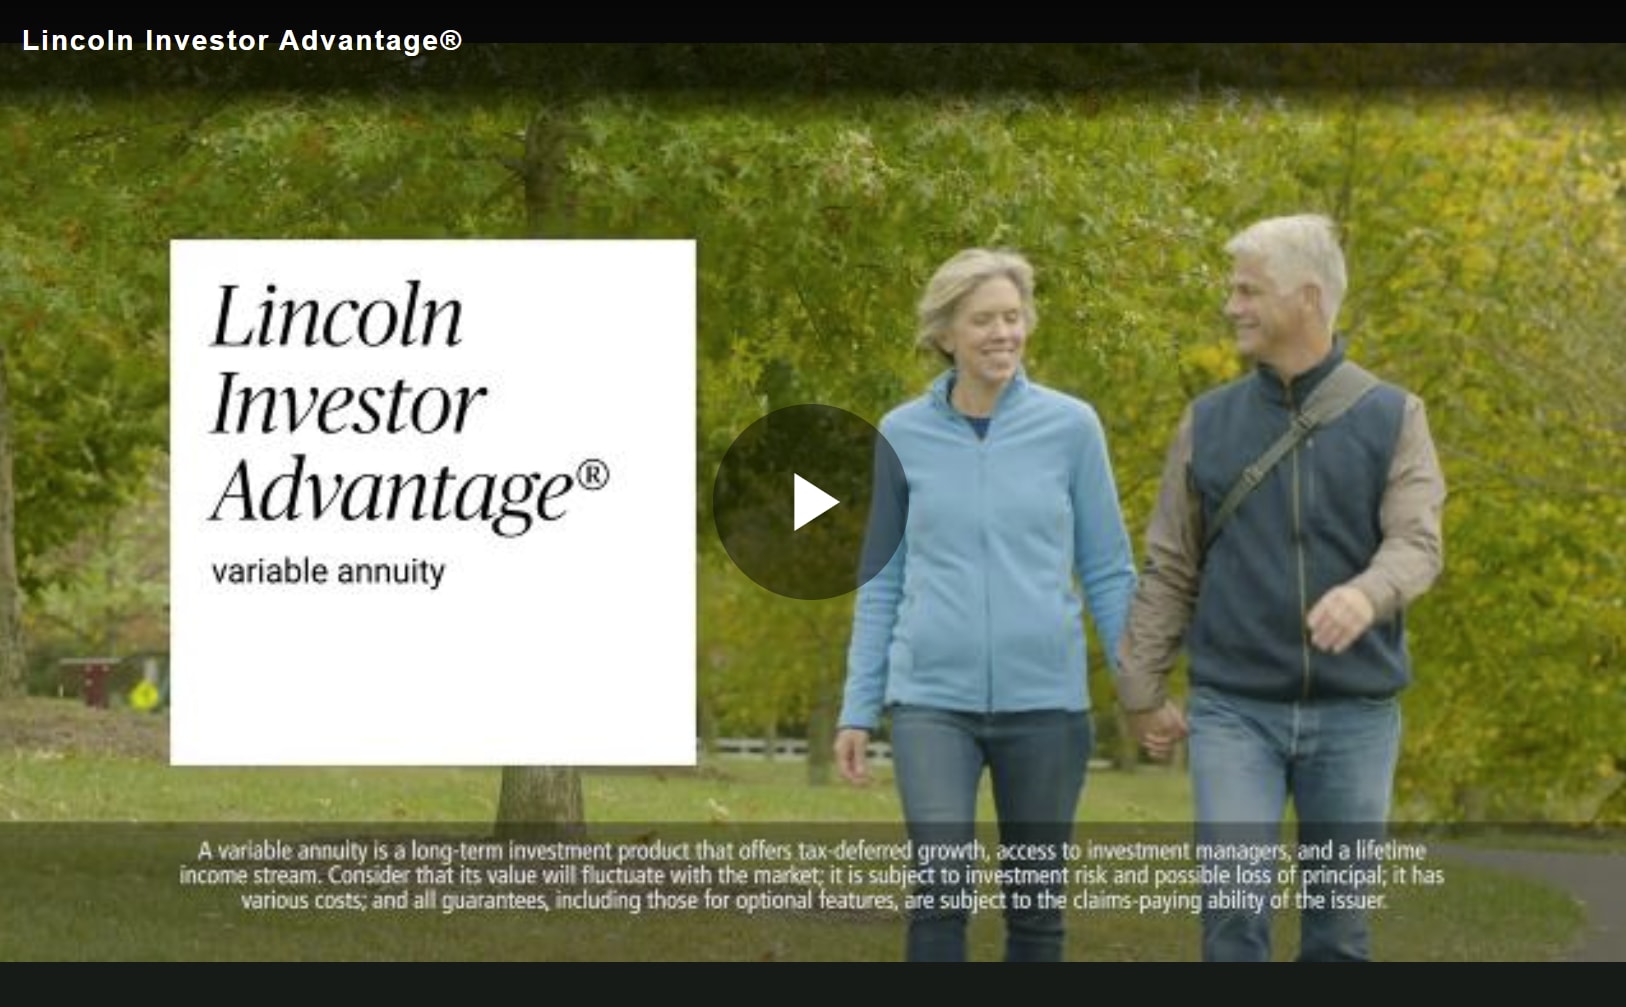 Lincoln Investor Advantage video